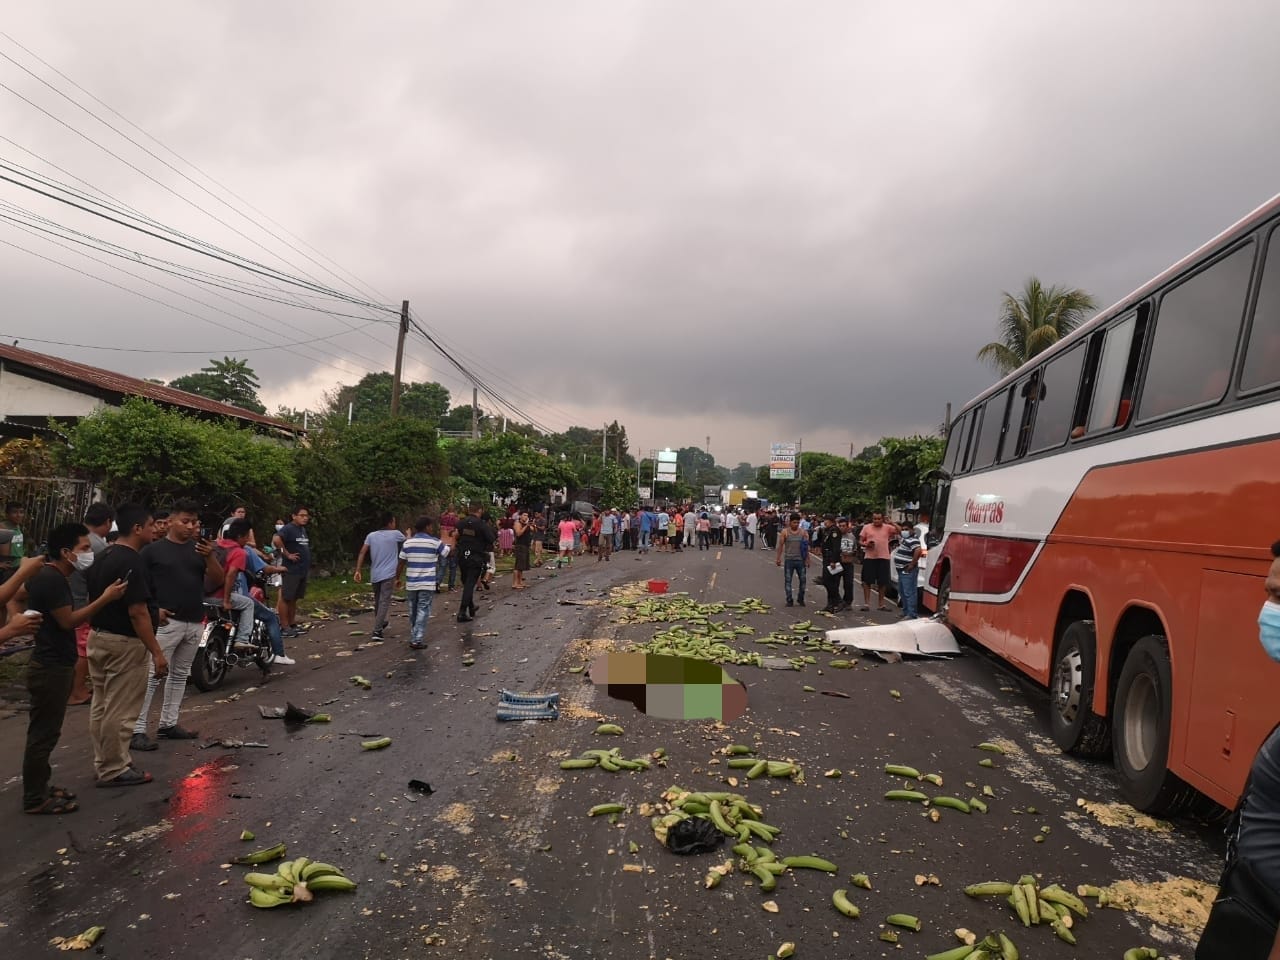 Las personas heridas fueron trasladadas a diferentes centros hospitalarios. Foto Prensa Libre: Cruz Roja de Guatemala.